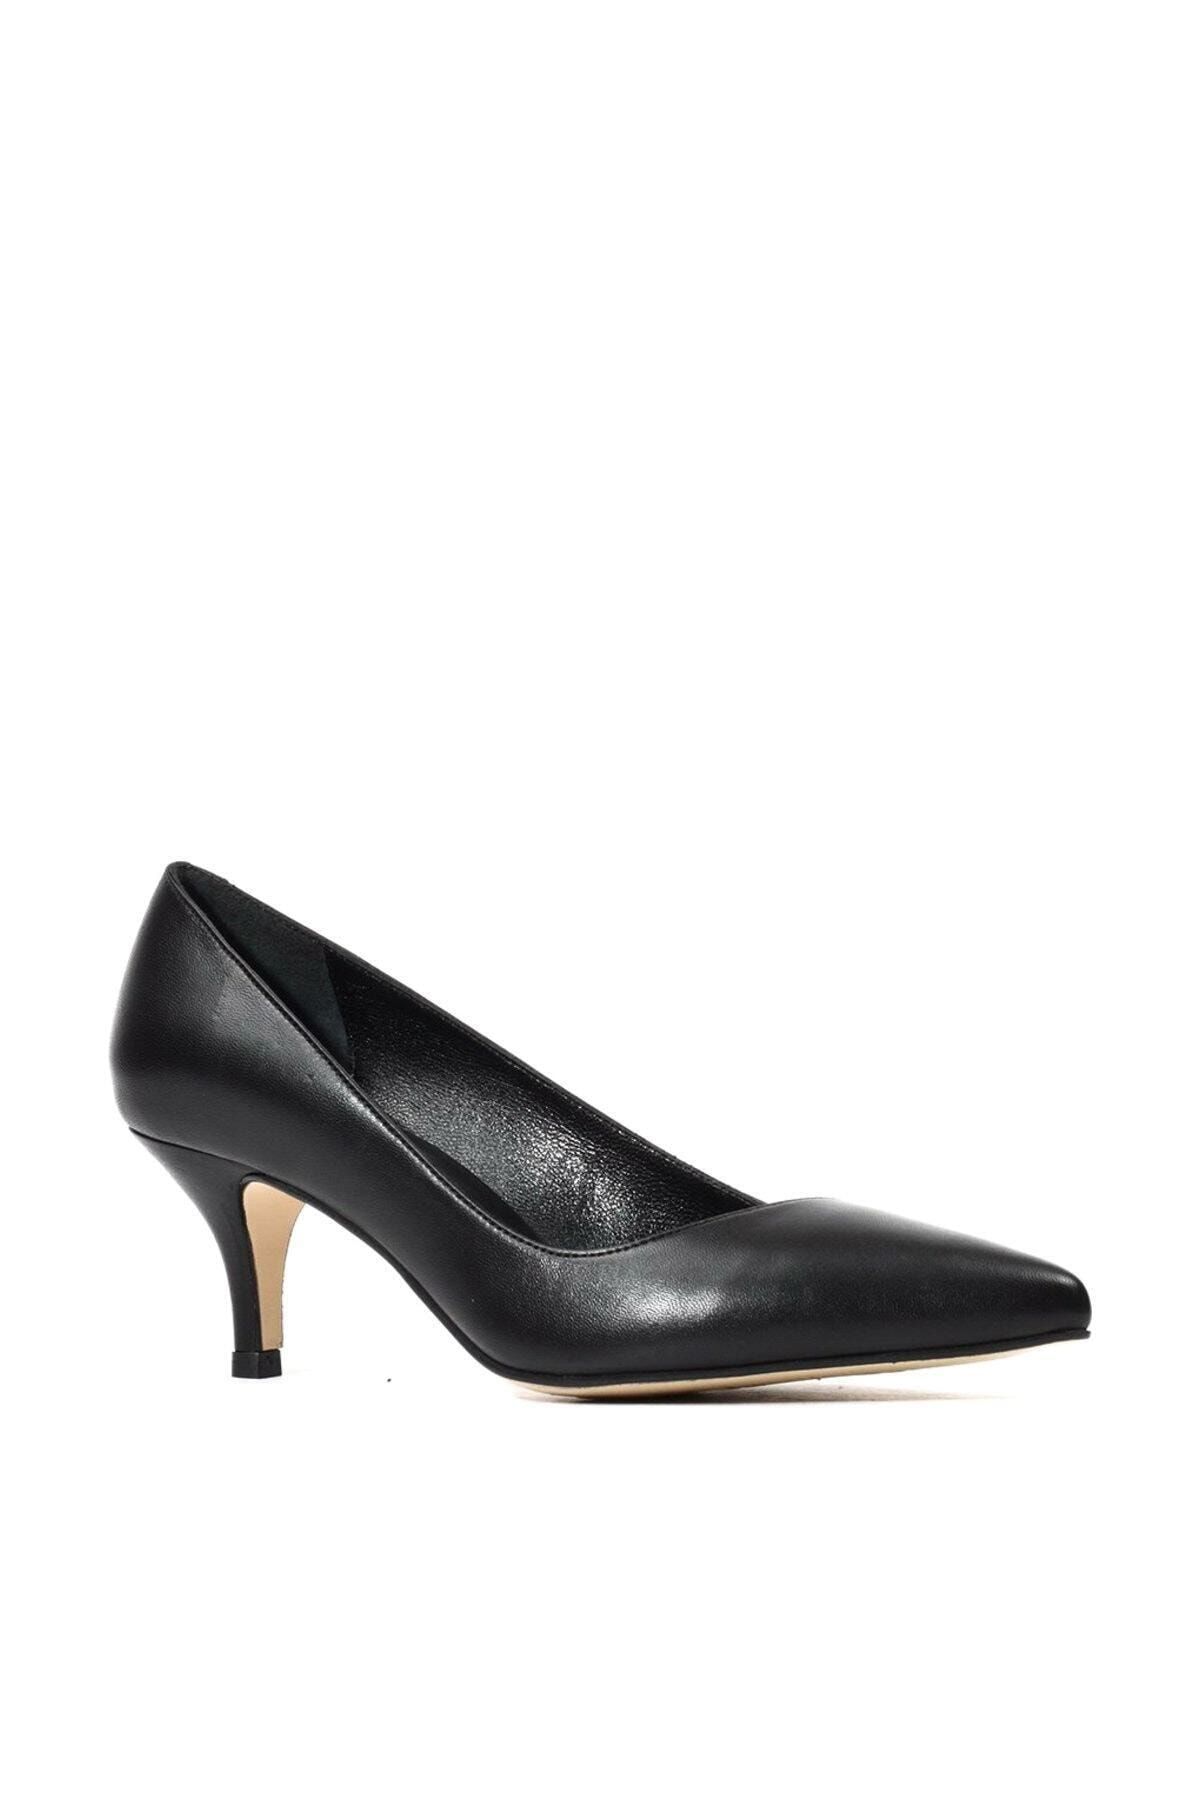 Kuzucuoğlu Ayakkabı Hakiki Deri Siyah Klasik Topuklu Kadın  Ayakkabı